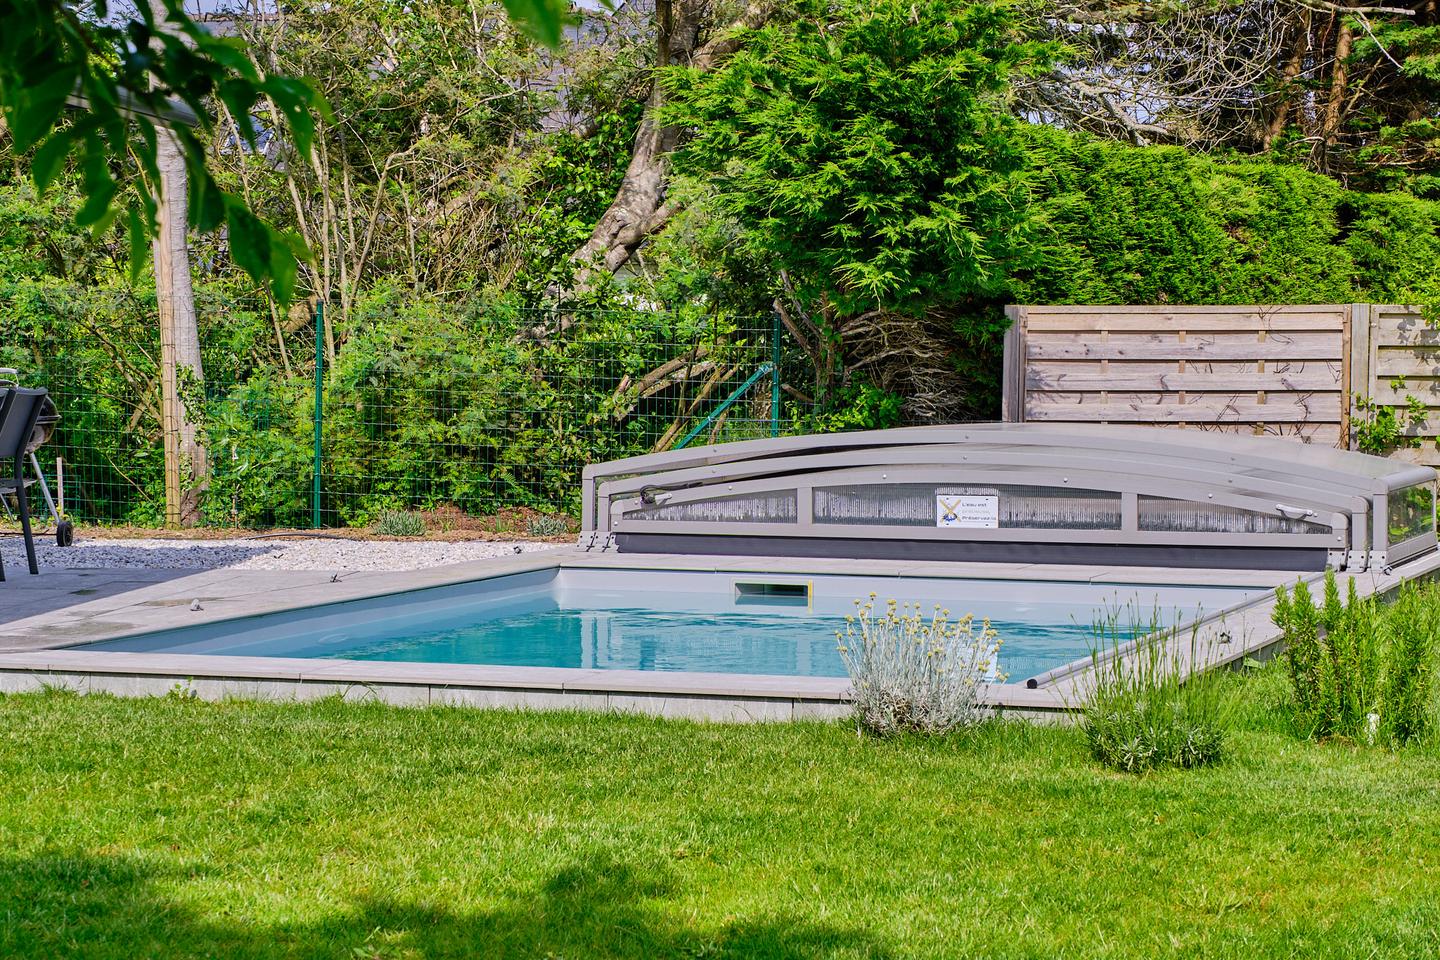 Hôte GreenGo: Grande maison familiale avec piscine pour 10 personnes, 12 max. Note de 4.9 sur une autre plateforme - Image 19